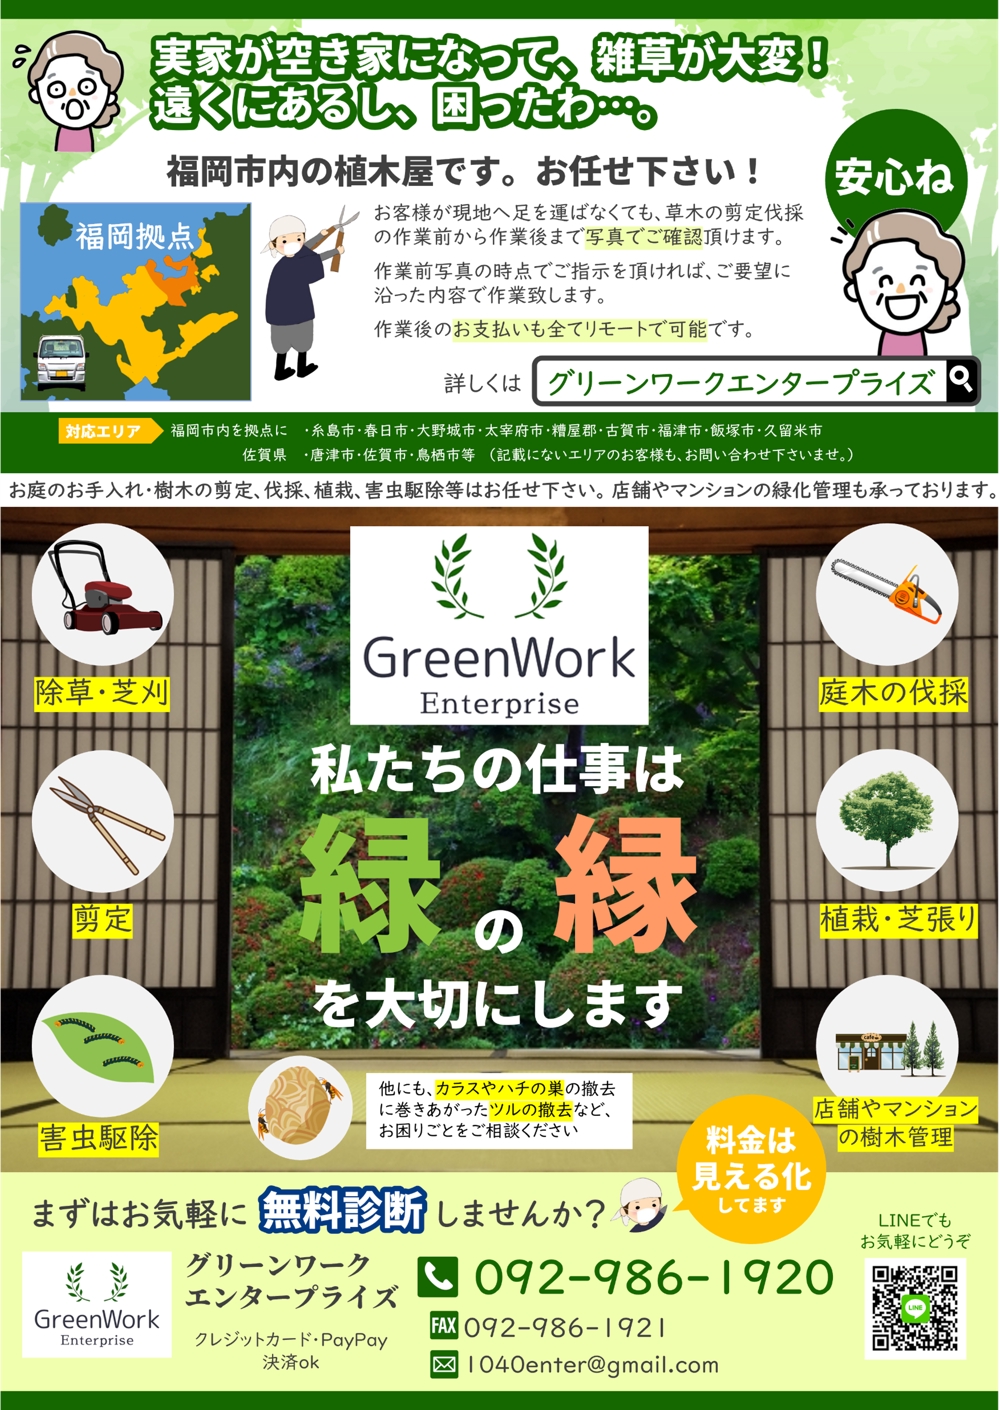 greenwork enterprise5.png